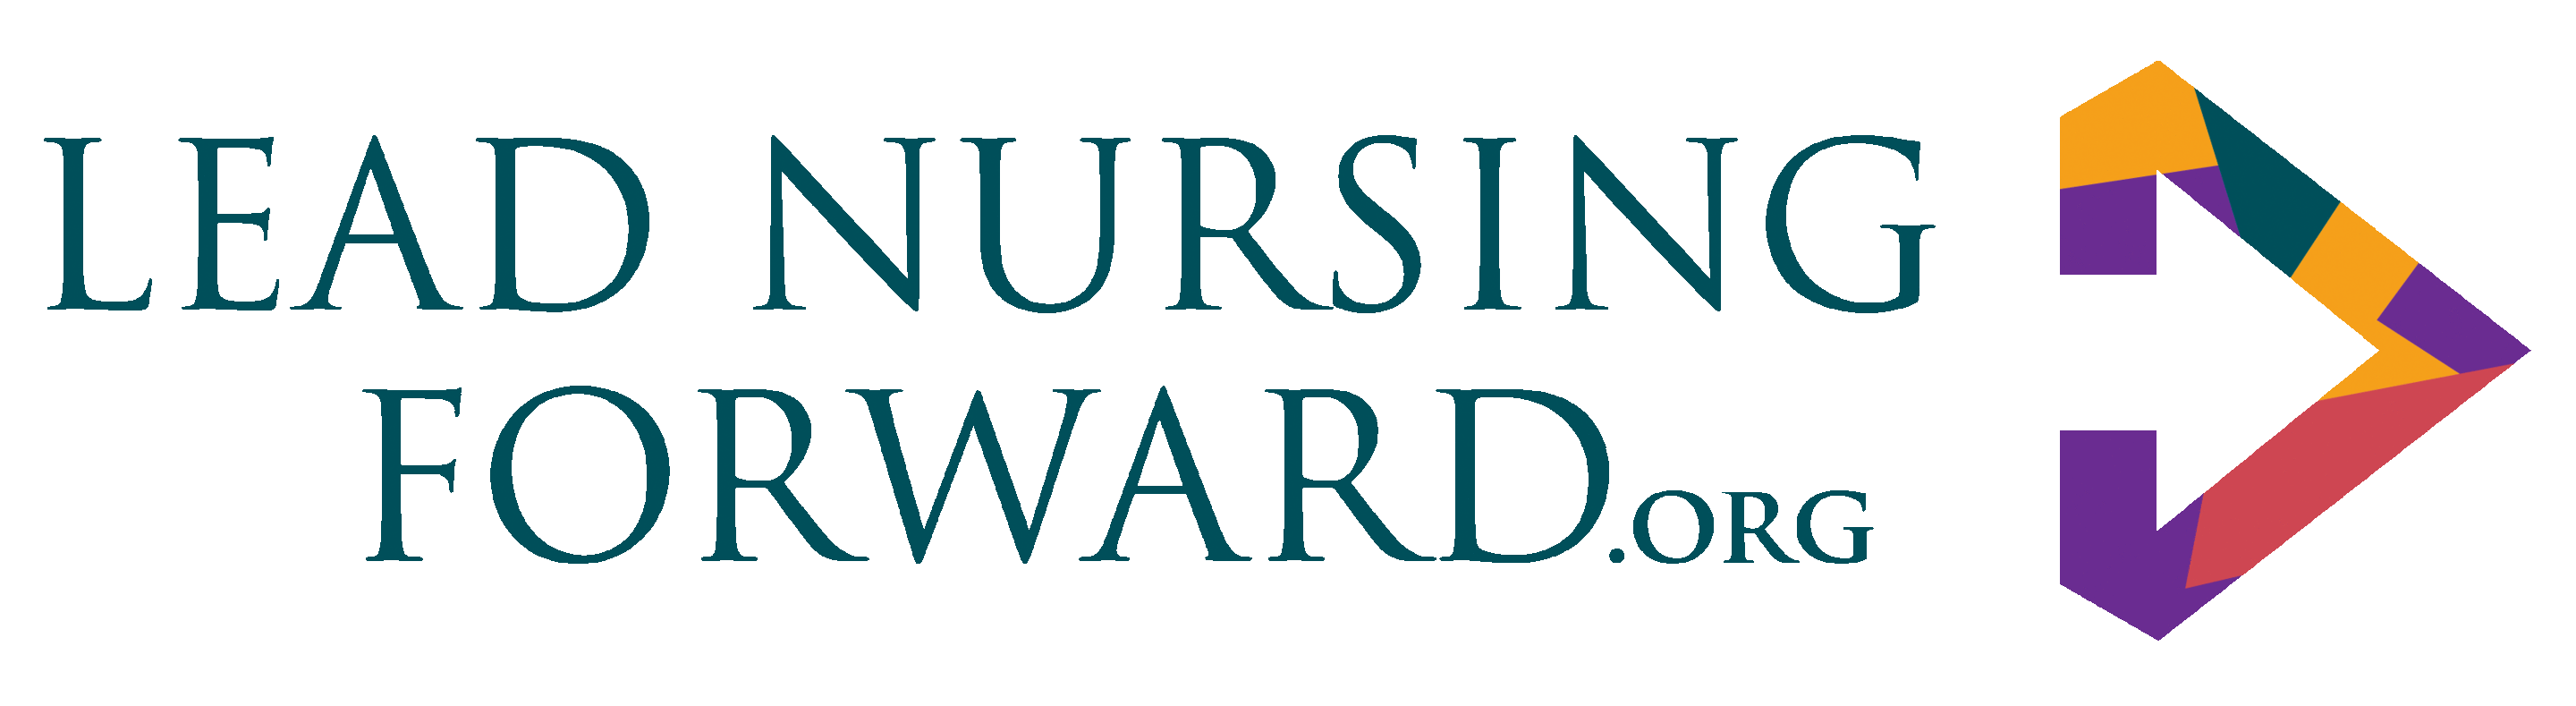 Lead Nursing Forward logo